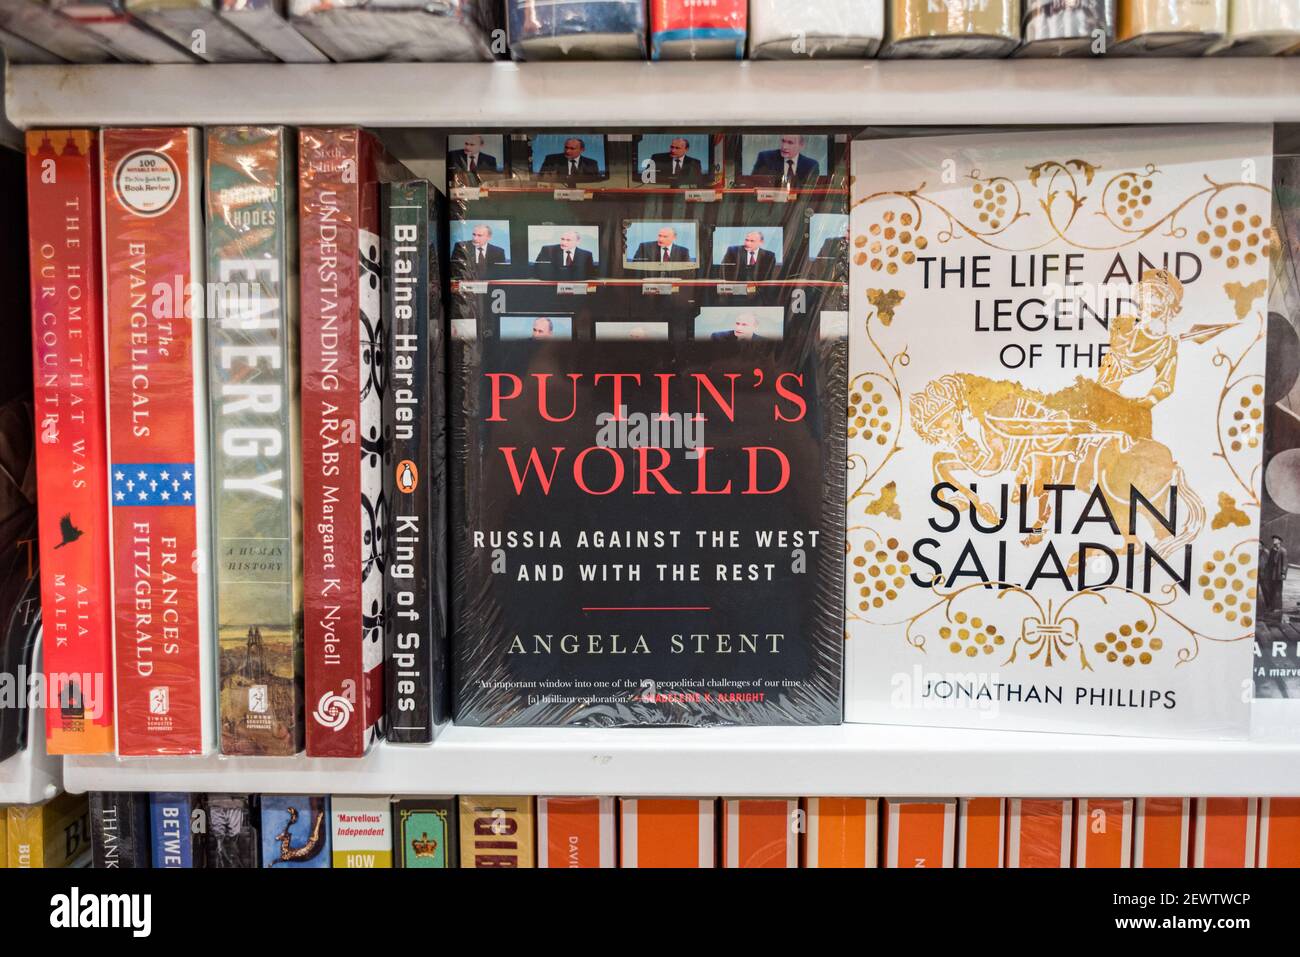 Bangkok, Thaïlande - 13 juin 2019 : un livre de Poutine's World, Russie Against the West et with the Rest par Angela Stent, sur le rayon de la librairie. Banque D'Images